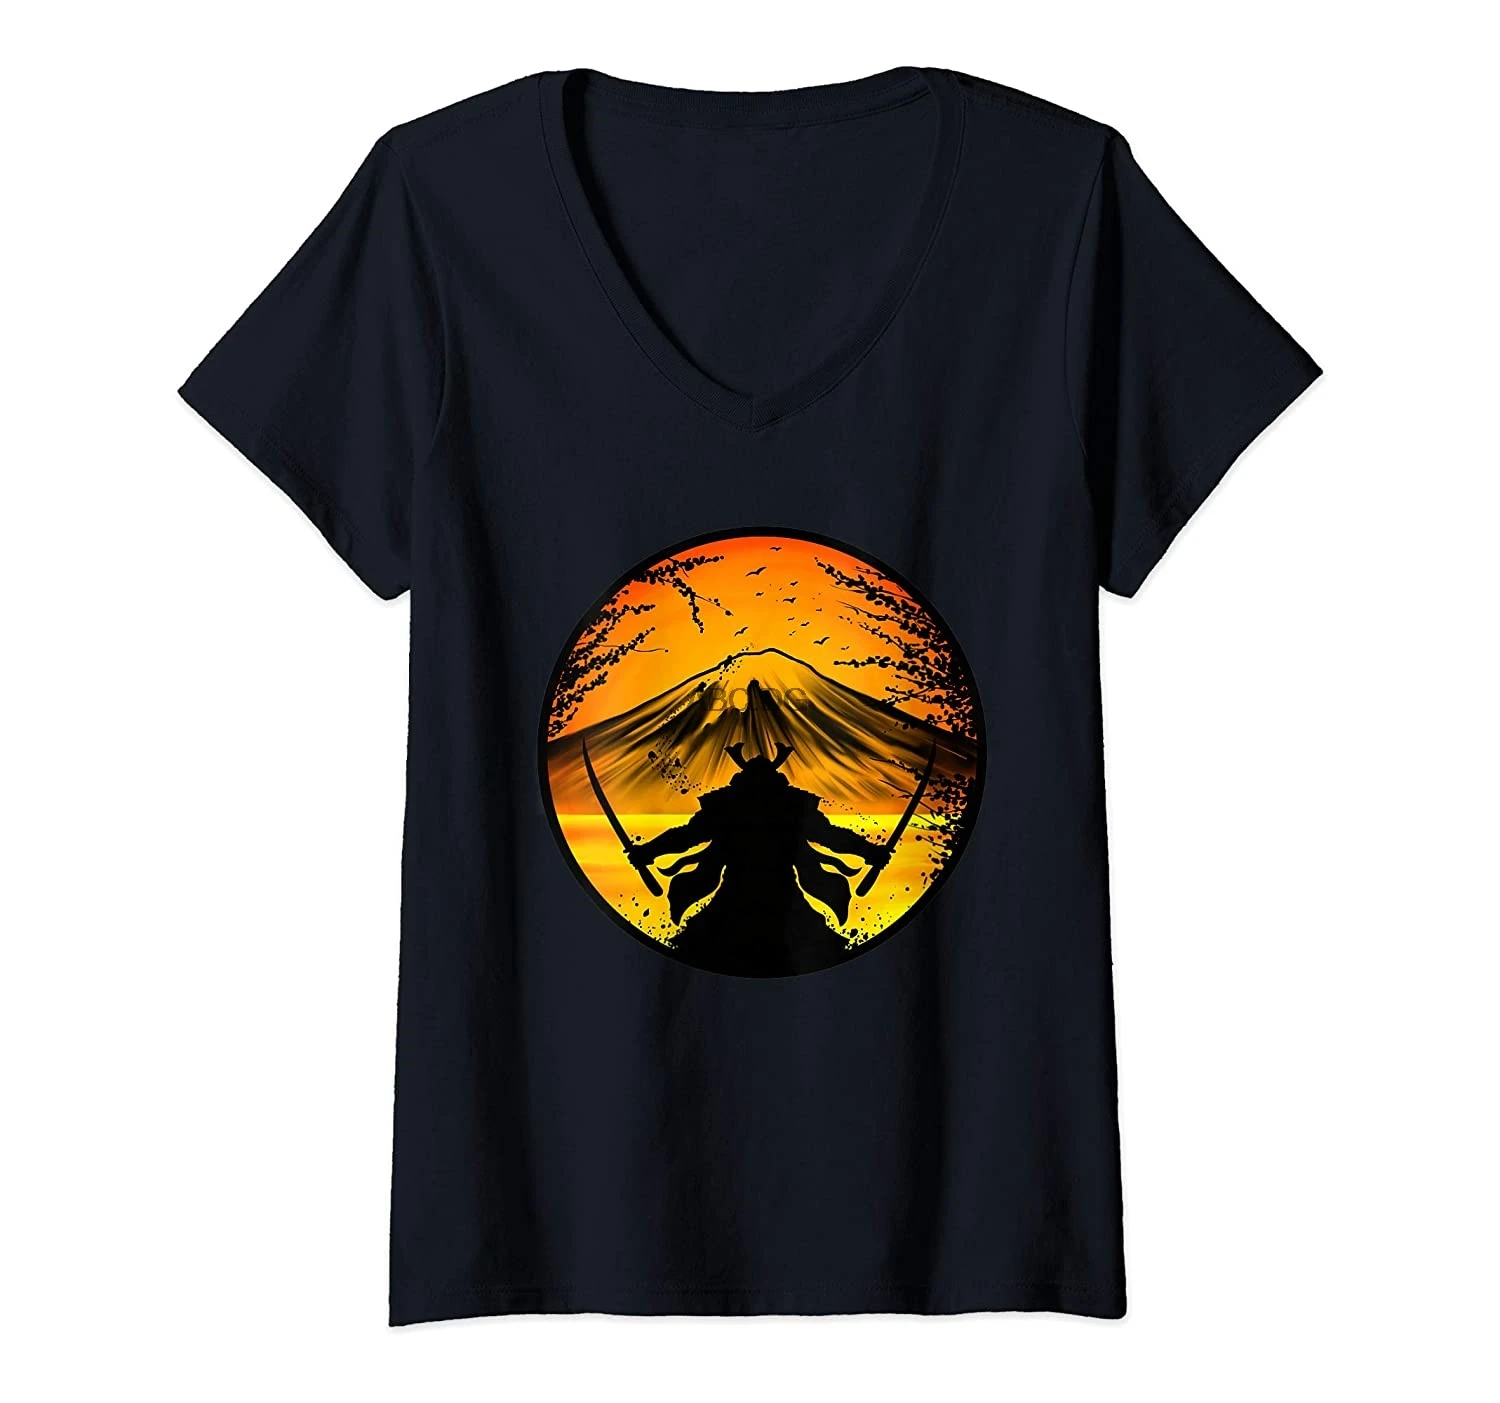 Женская футболка с V-образным вырезом и закатом самурайского воина дракона